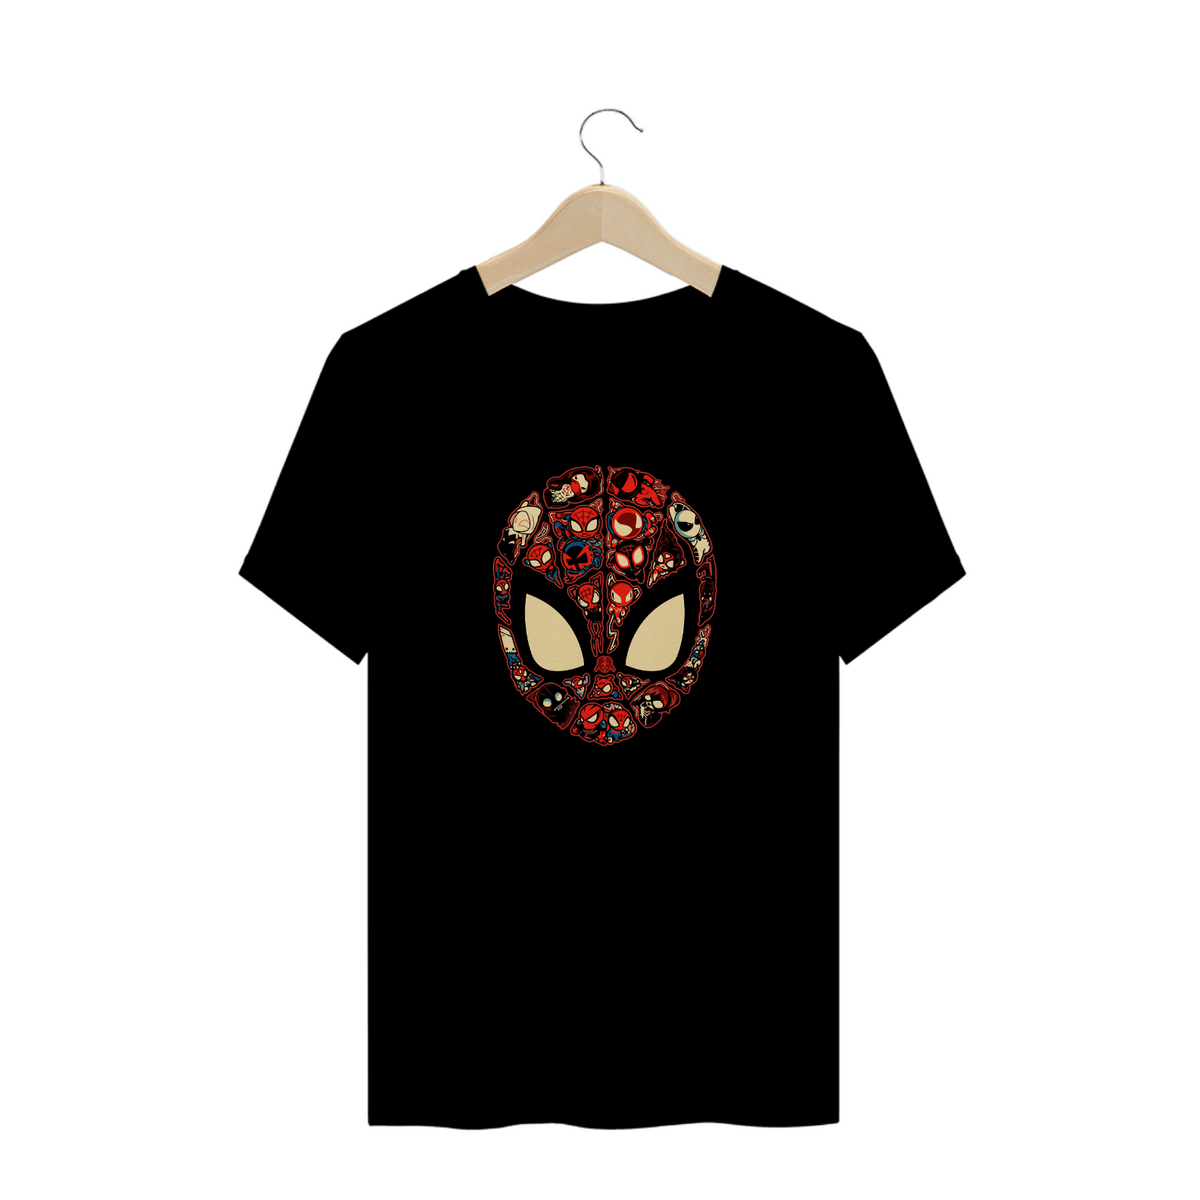 Nome do produto: Camisa Spider Man III